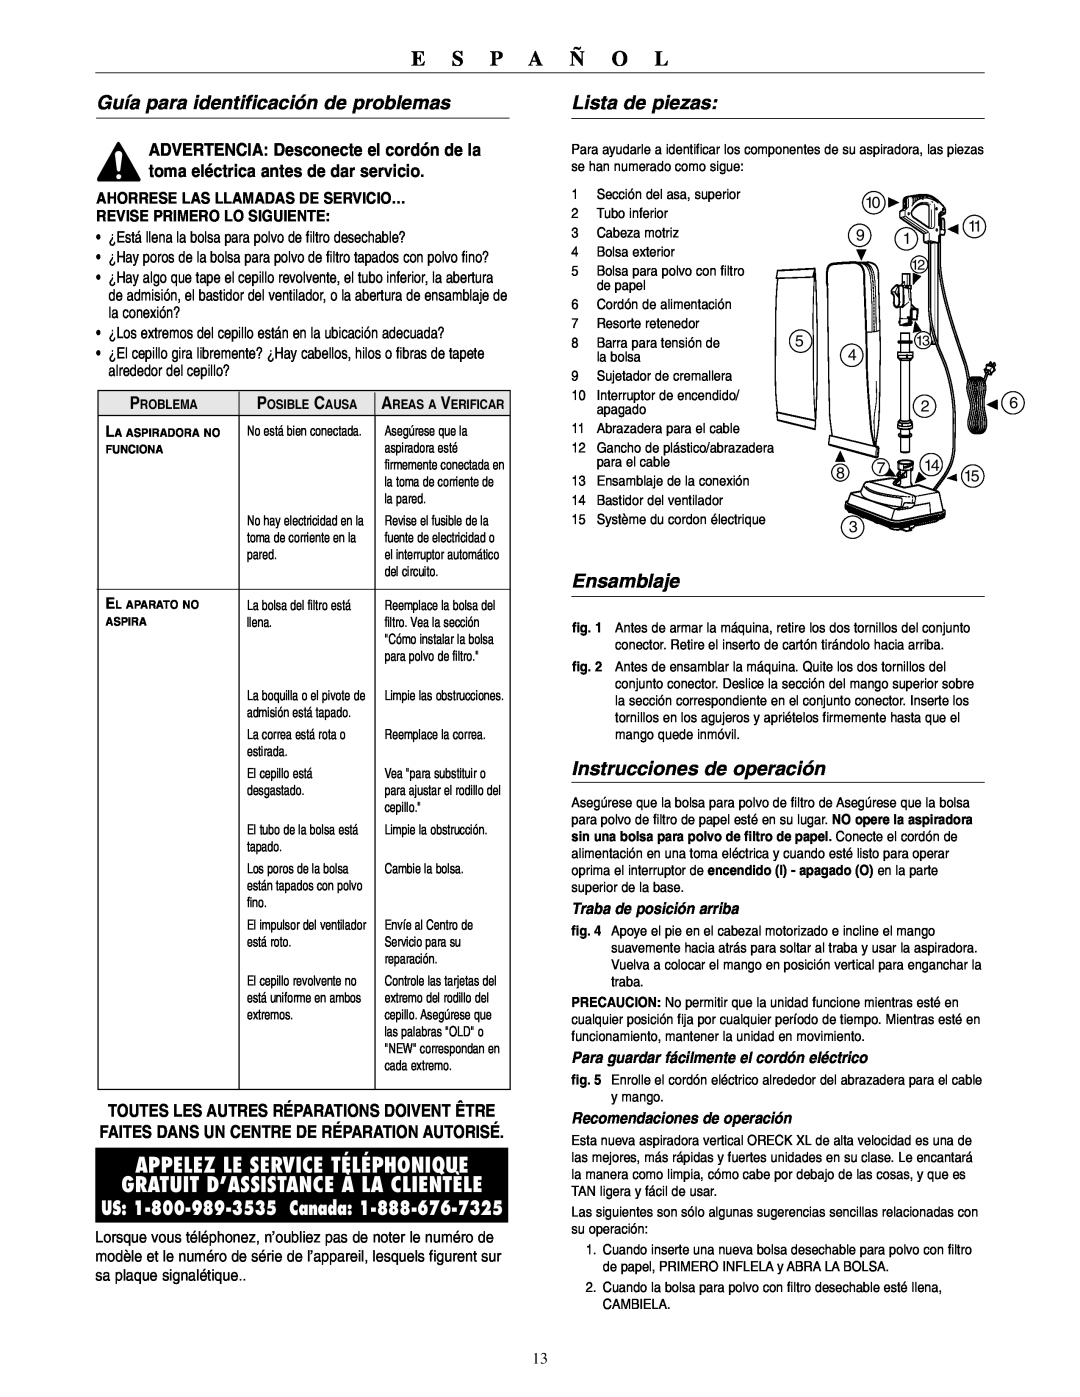 Oreck U3640RH warranty Guía para identificación de problemas, Lista de piezas, Ensamblaje, Instrucciones de operación 